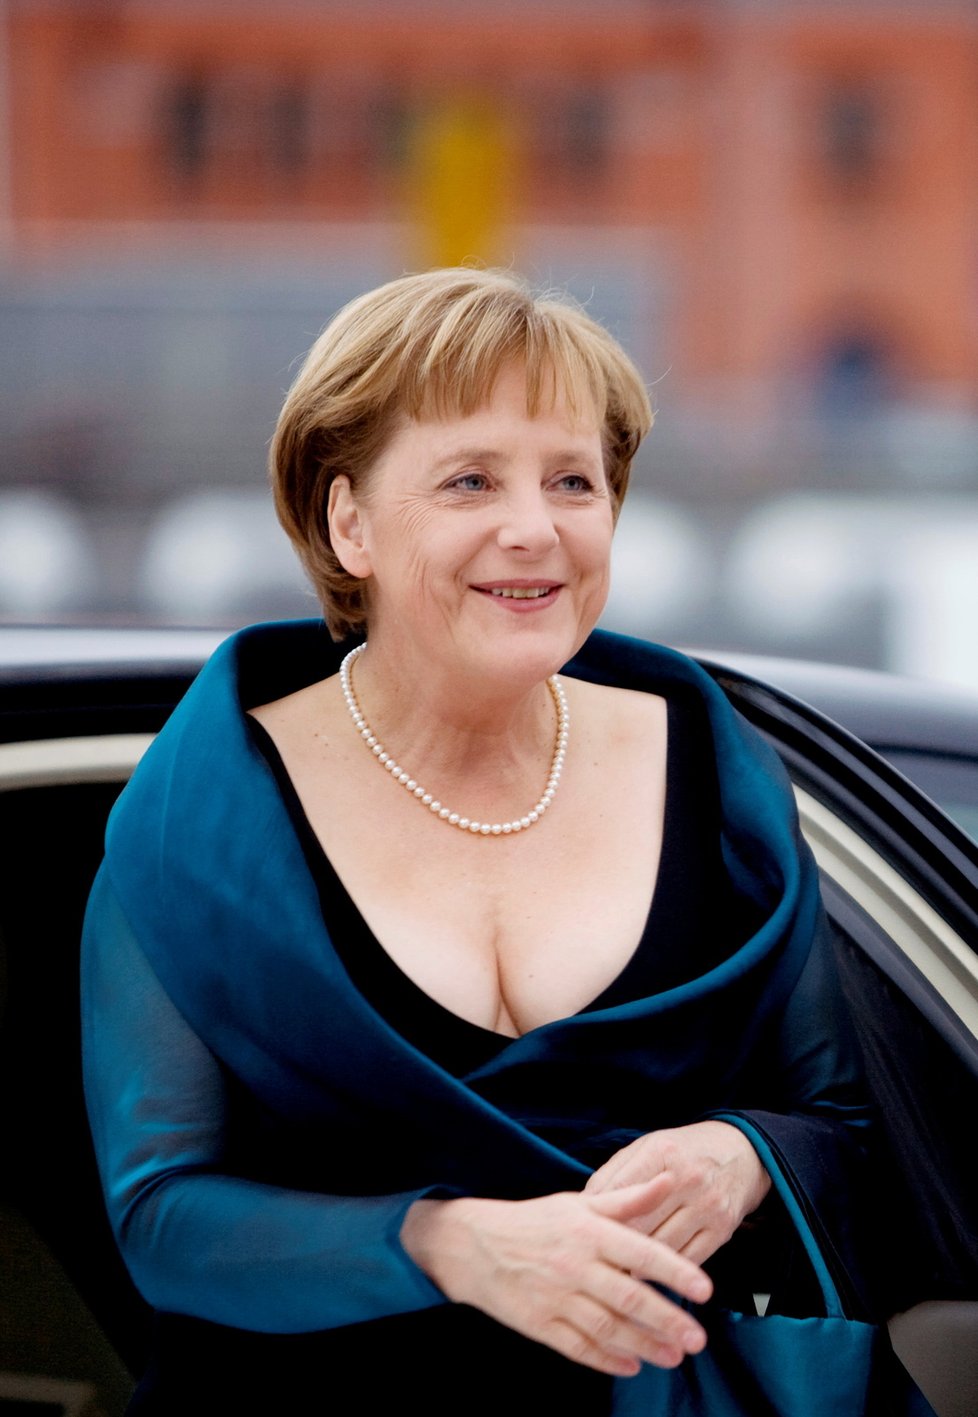 Kancléřka Angela Merkelová a její módní styl.